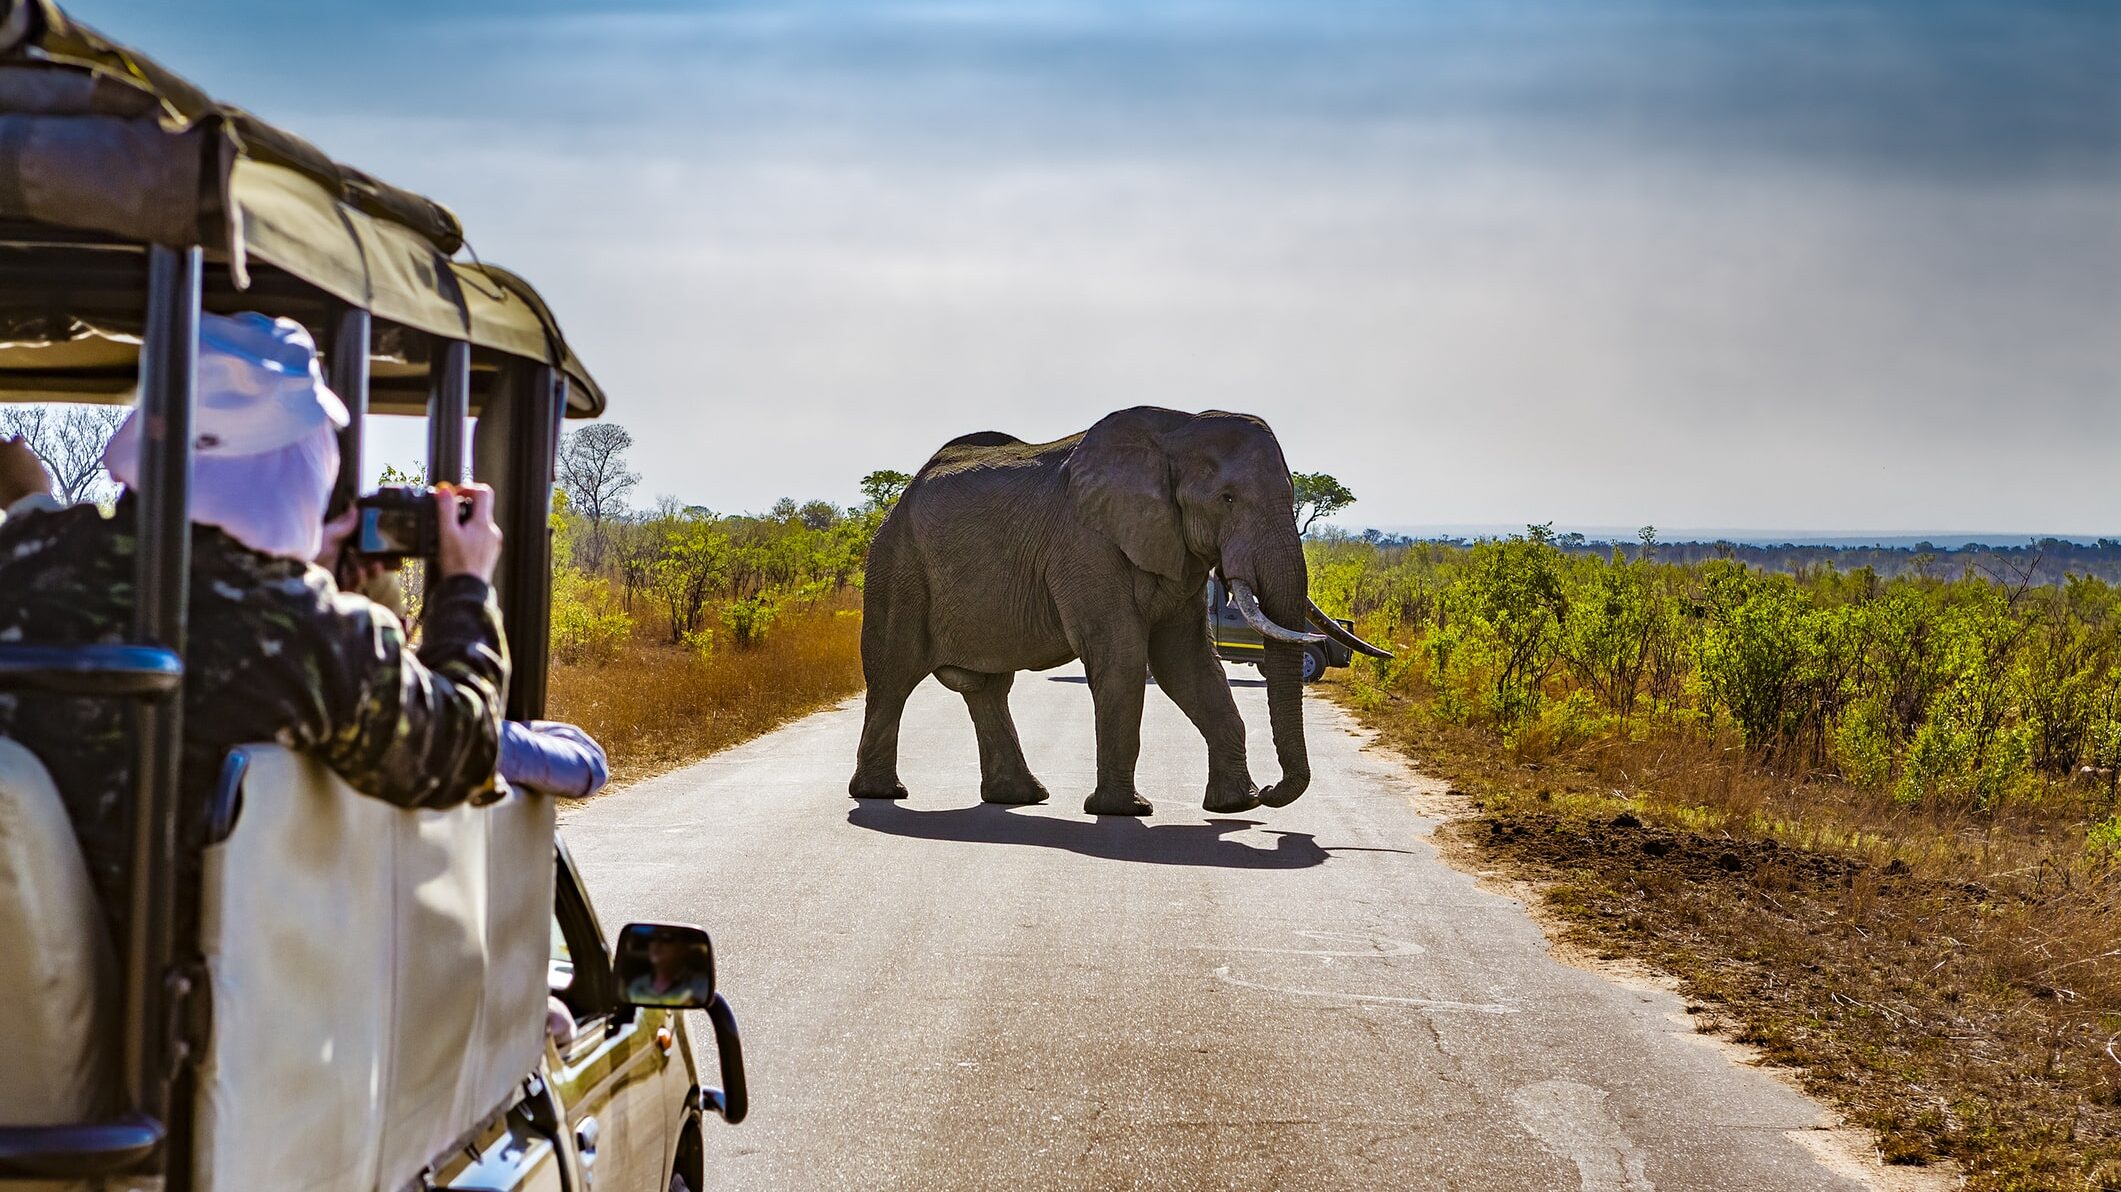 Visit South Africa, Safari in Kruger National Park